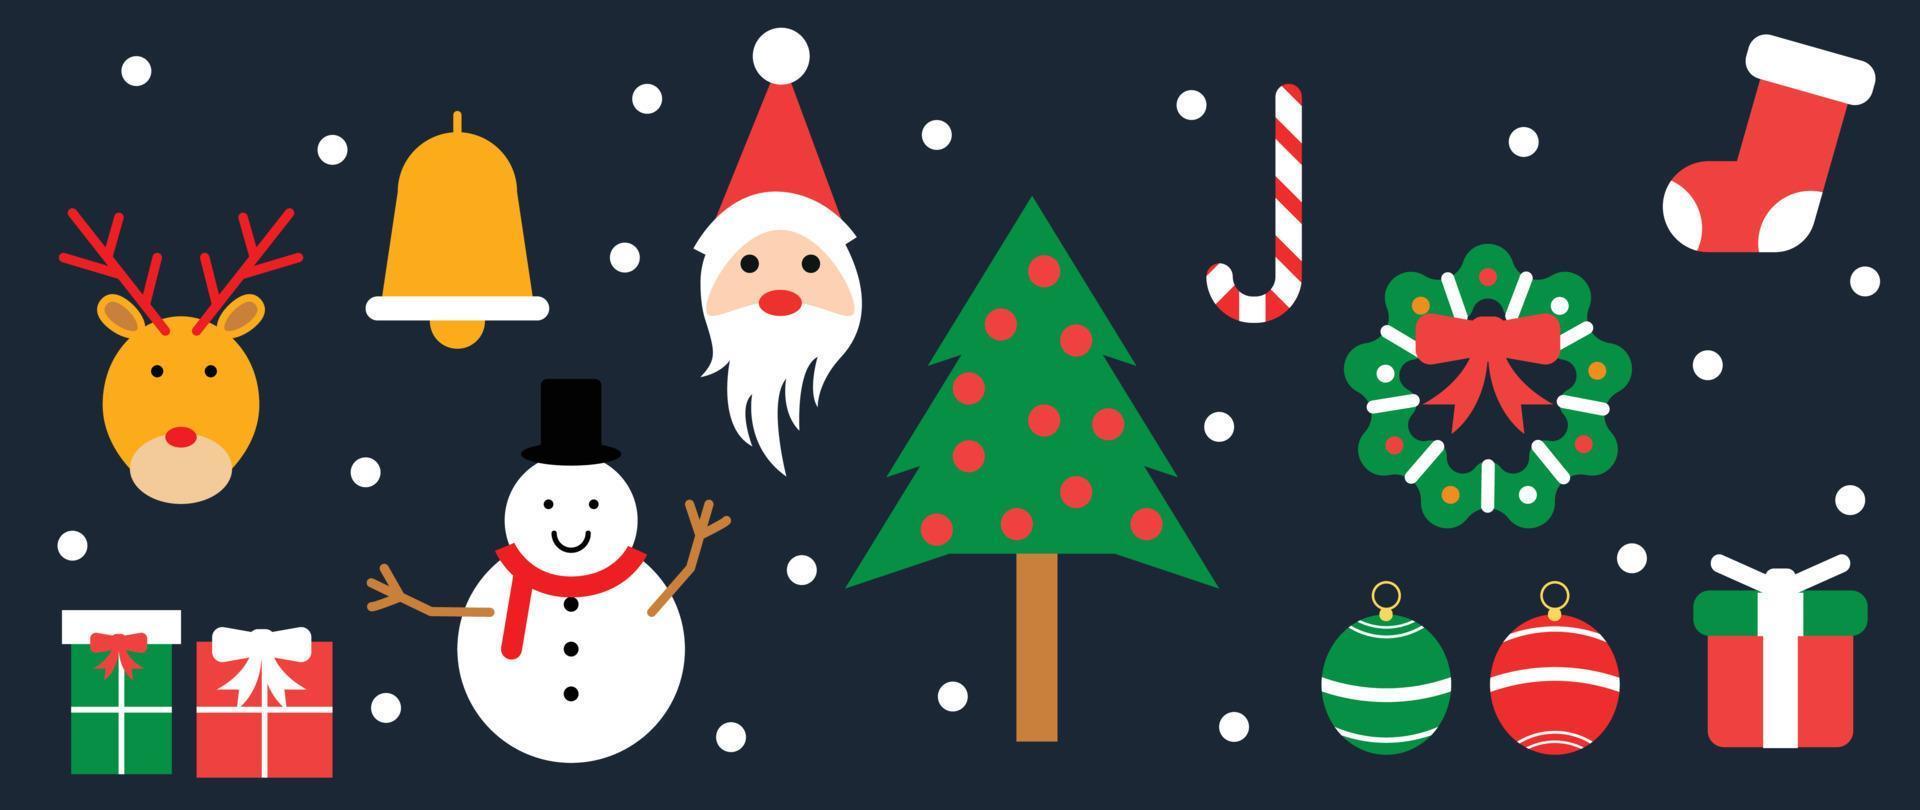 satz der lebhaften weihnachtselement-vektorillustration des winters. sammlung von weihnachtsbaum, kranz, kugel, socke, weihnachtsmann, glocke, schneemann. design für aufkleber, karte, poster, einladung, gruß. vektor